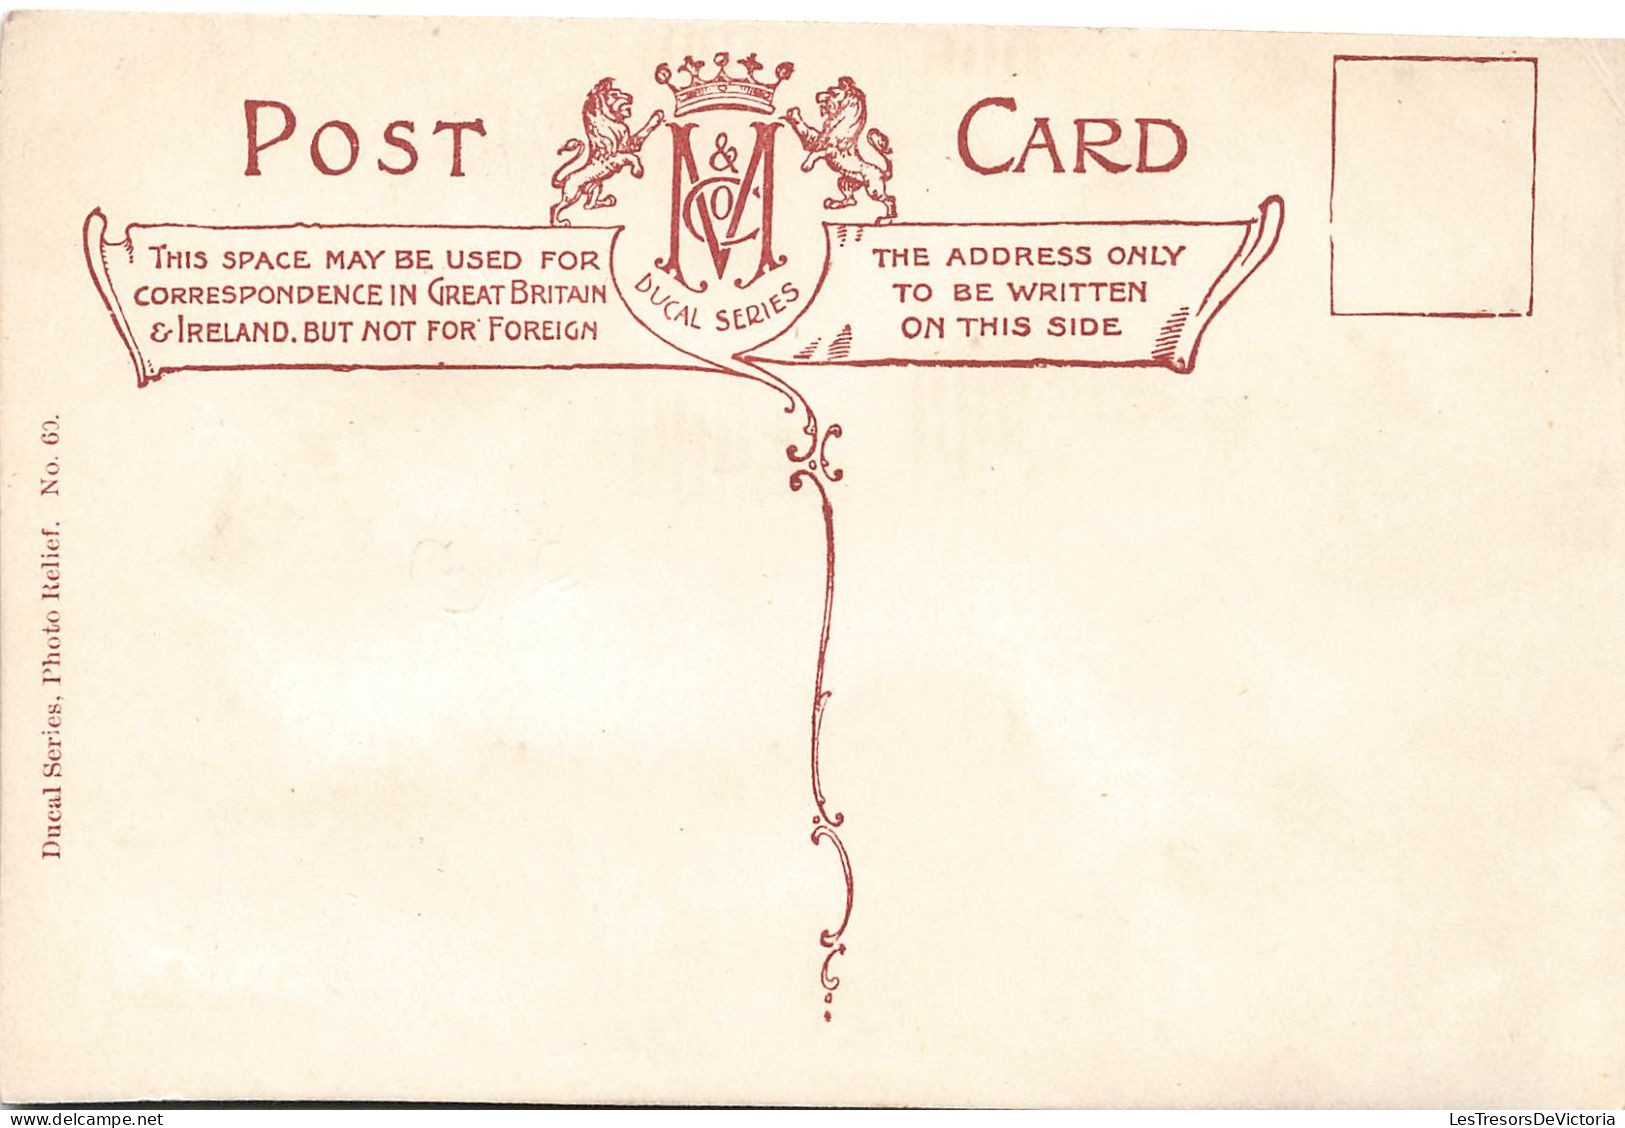 Famille Royale d'Angleterre - Lot de 4 cartes postales photo de la famille royale en relief - Carte Postale Ancienne